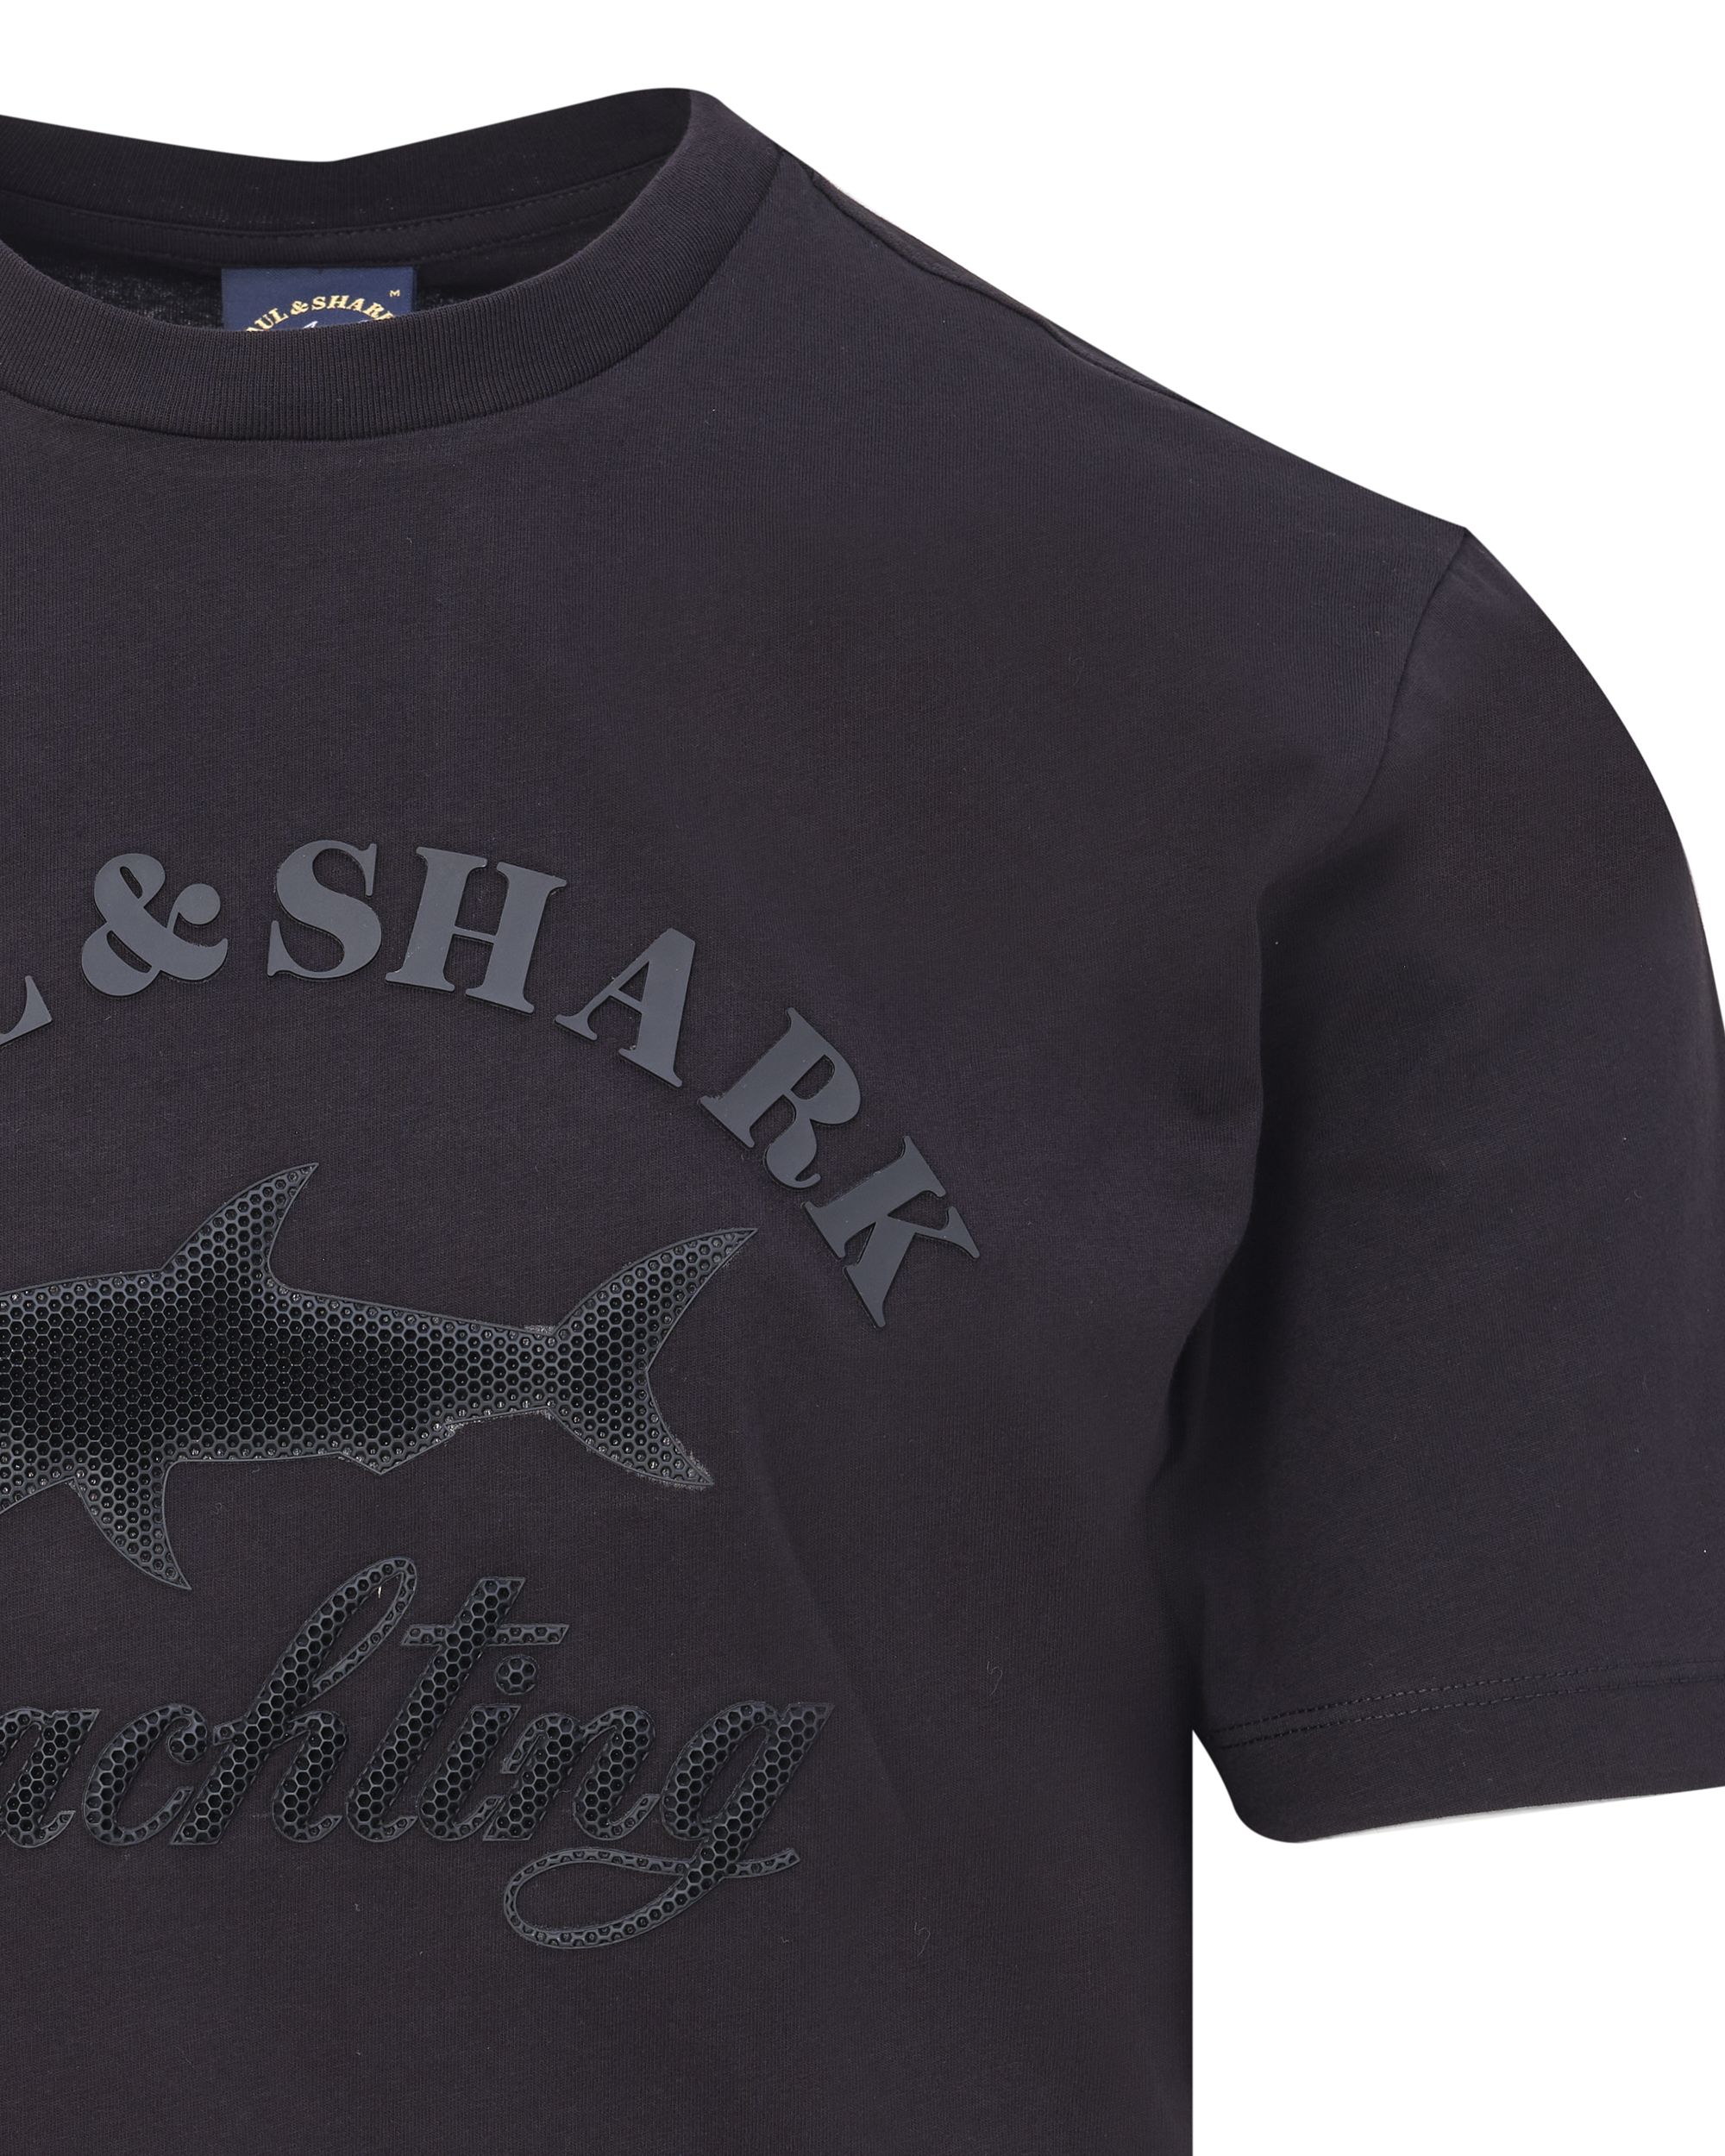 Paul & Shark T-shirt KM Zwart 083354-001-L